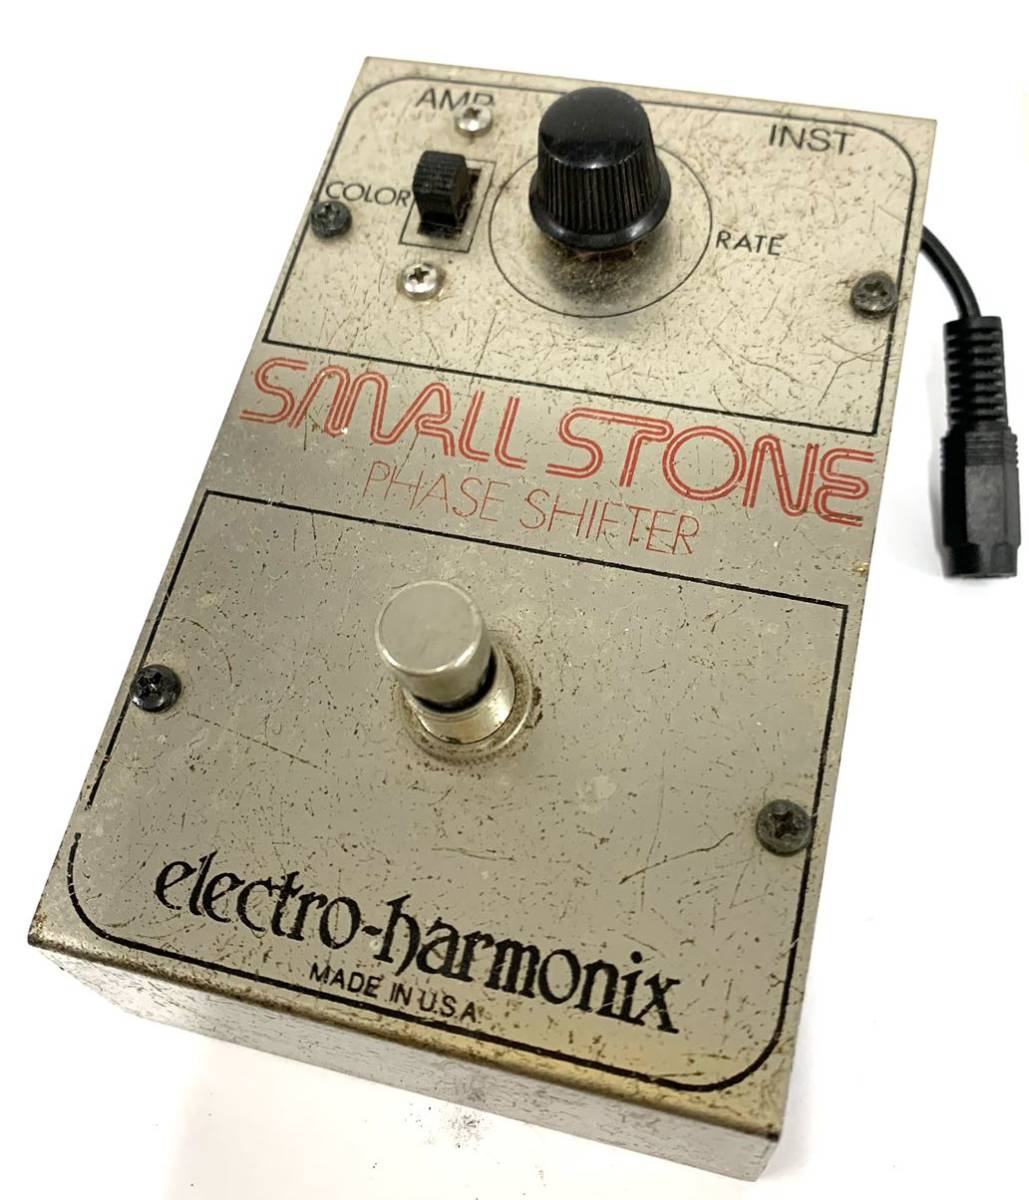 動作OK Vintage PHASE SHIFTER Electro Harmonix Small Stoneヴィンテージelectro-harmonix スモールストーン フェイザー エレハモ カ4の画像1